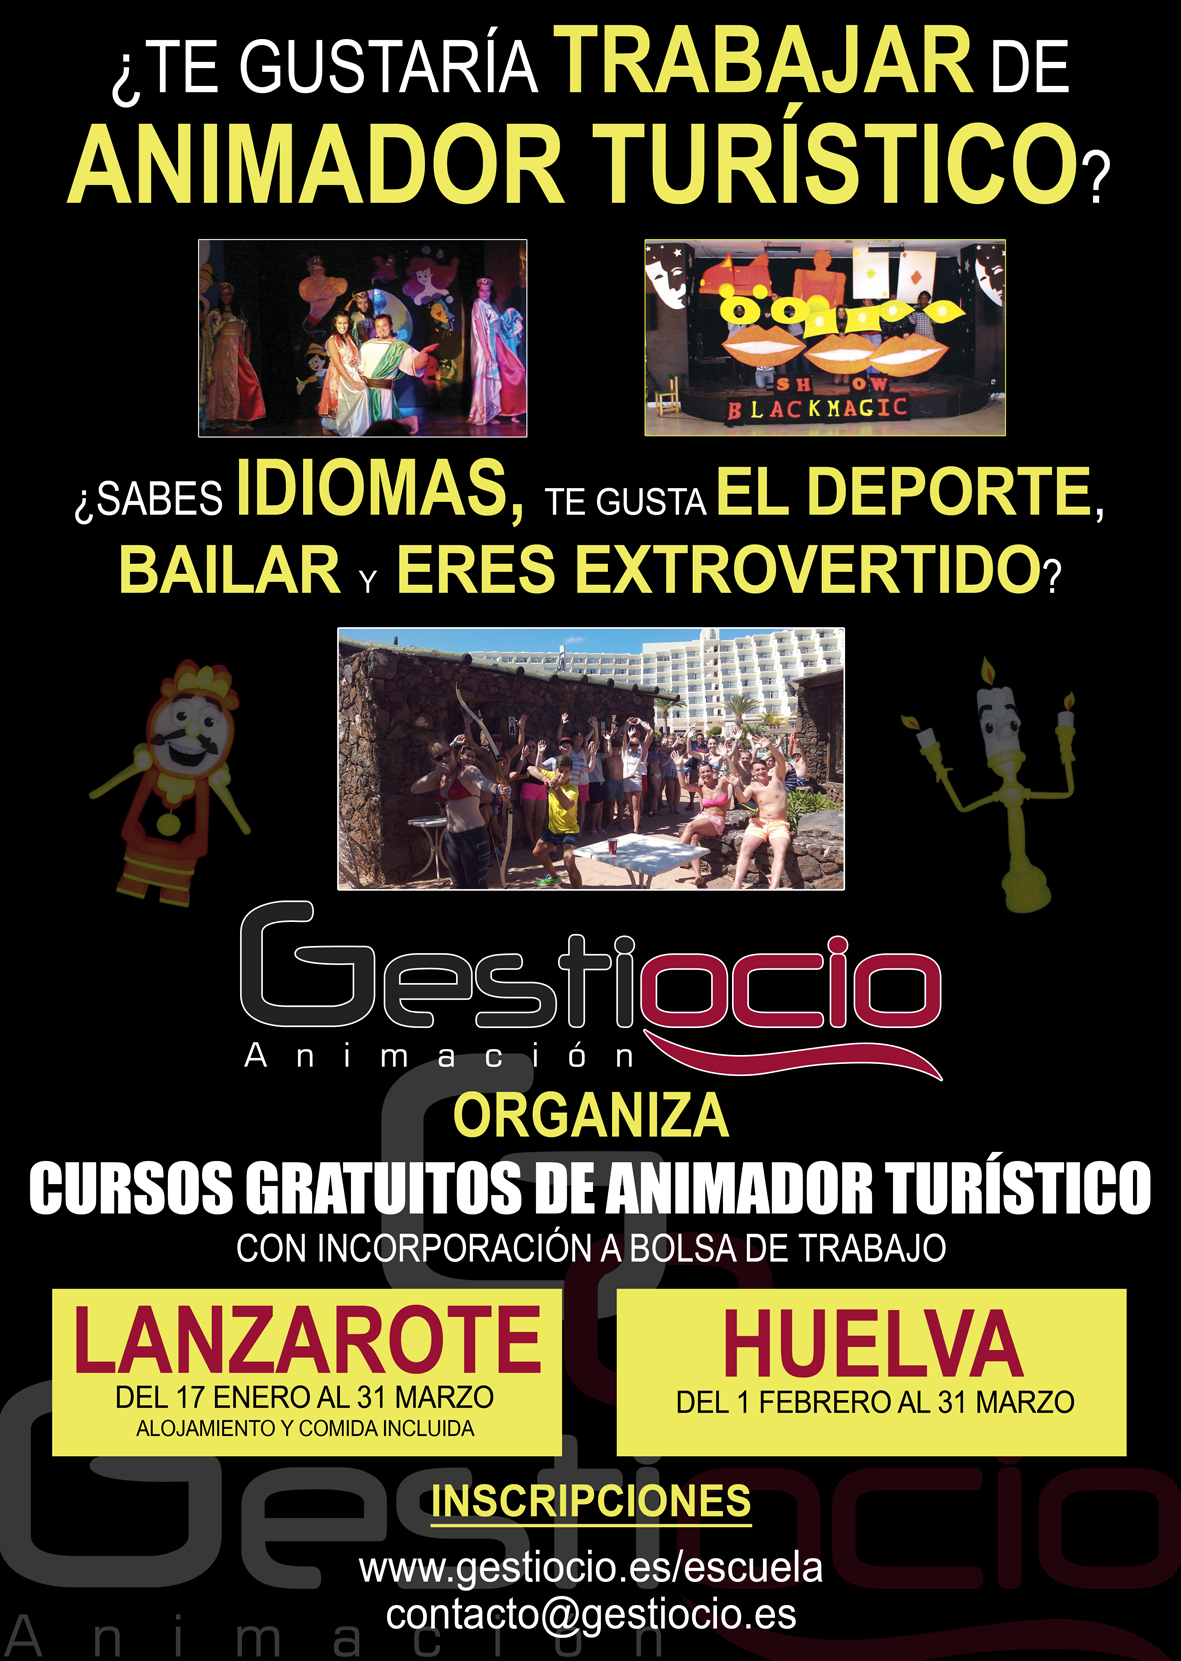 Cursos de Animador turístico. Lanzarote y Huelva. 2016